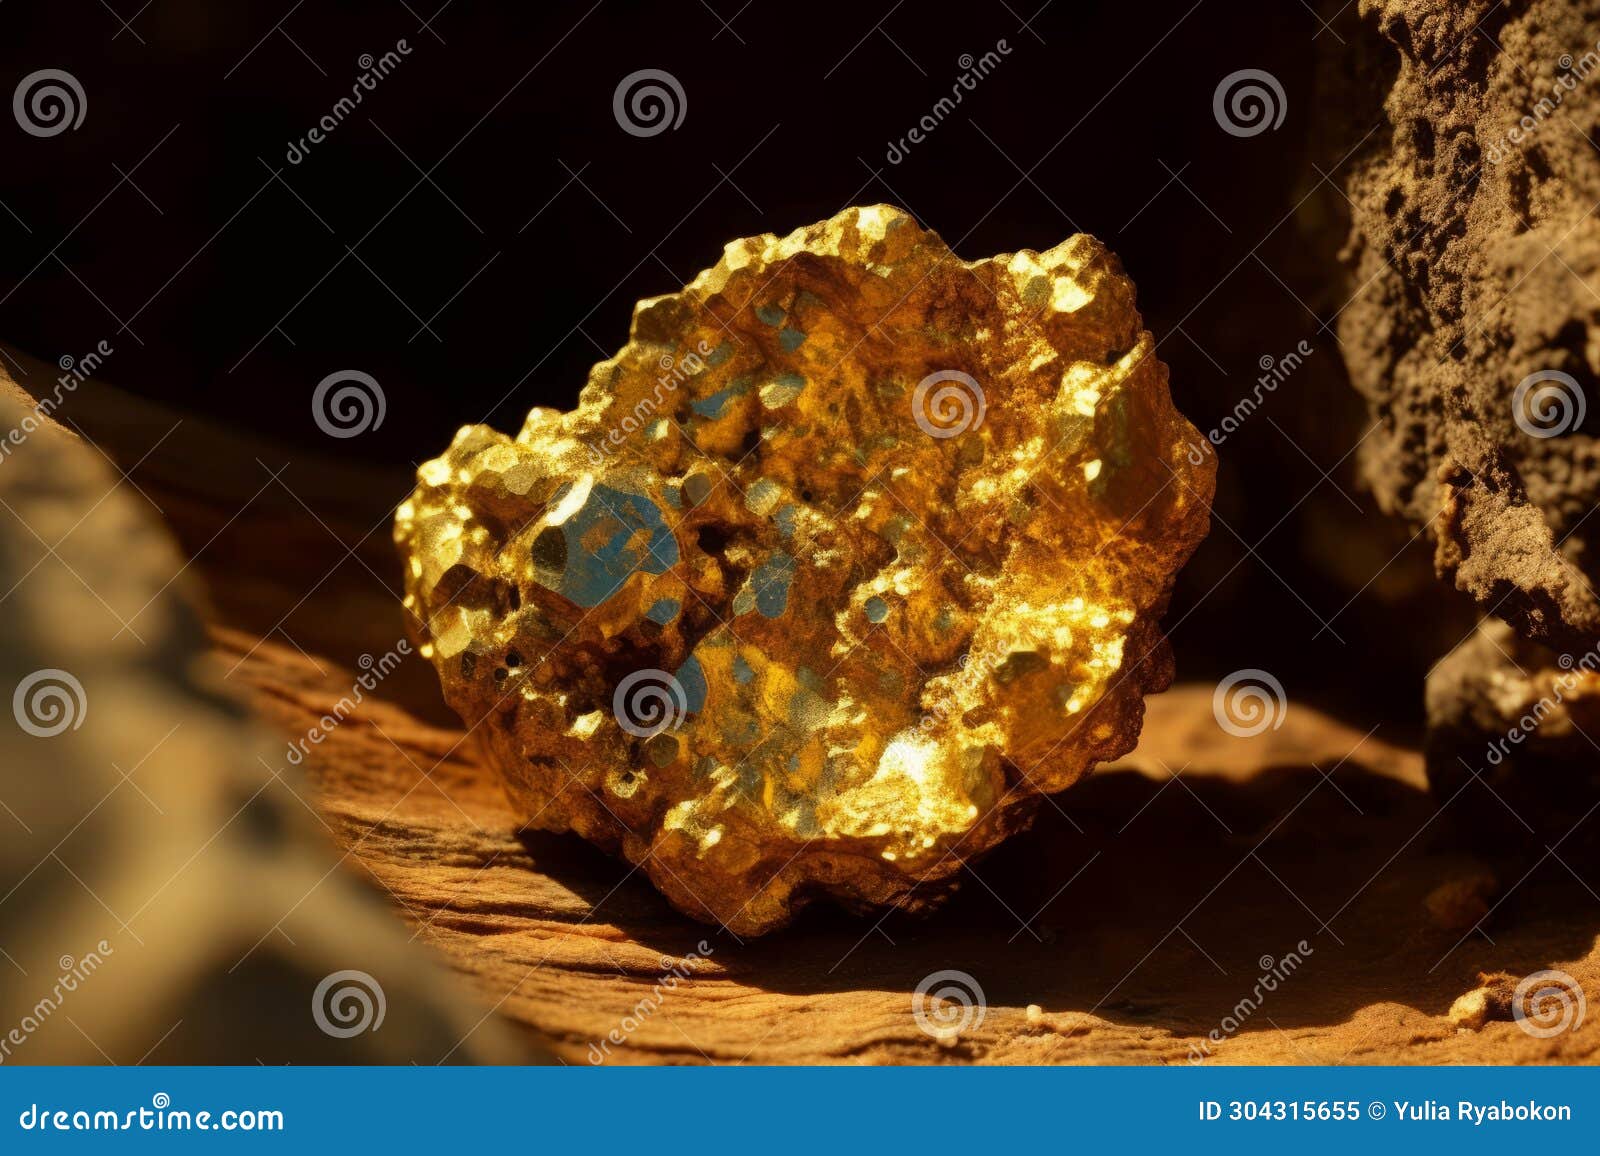 mining gold precious nugget. generate ai